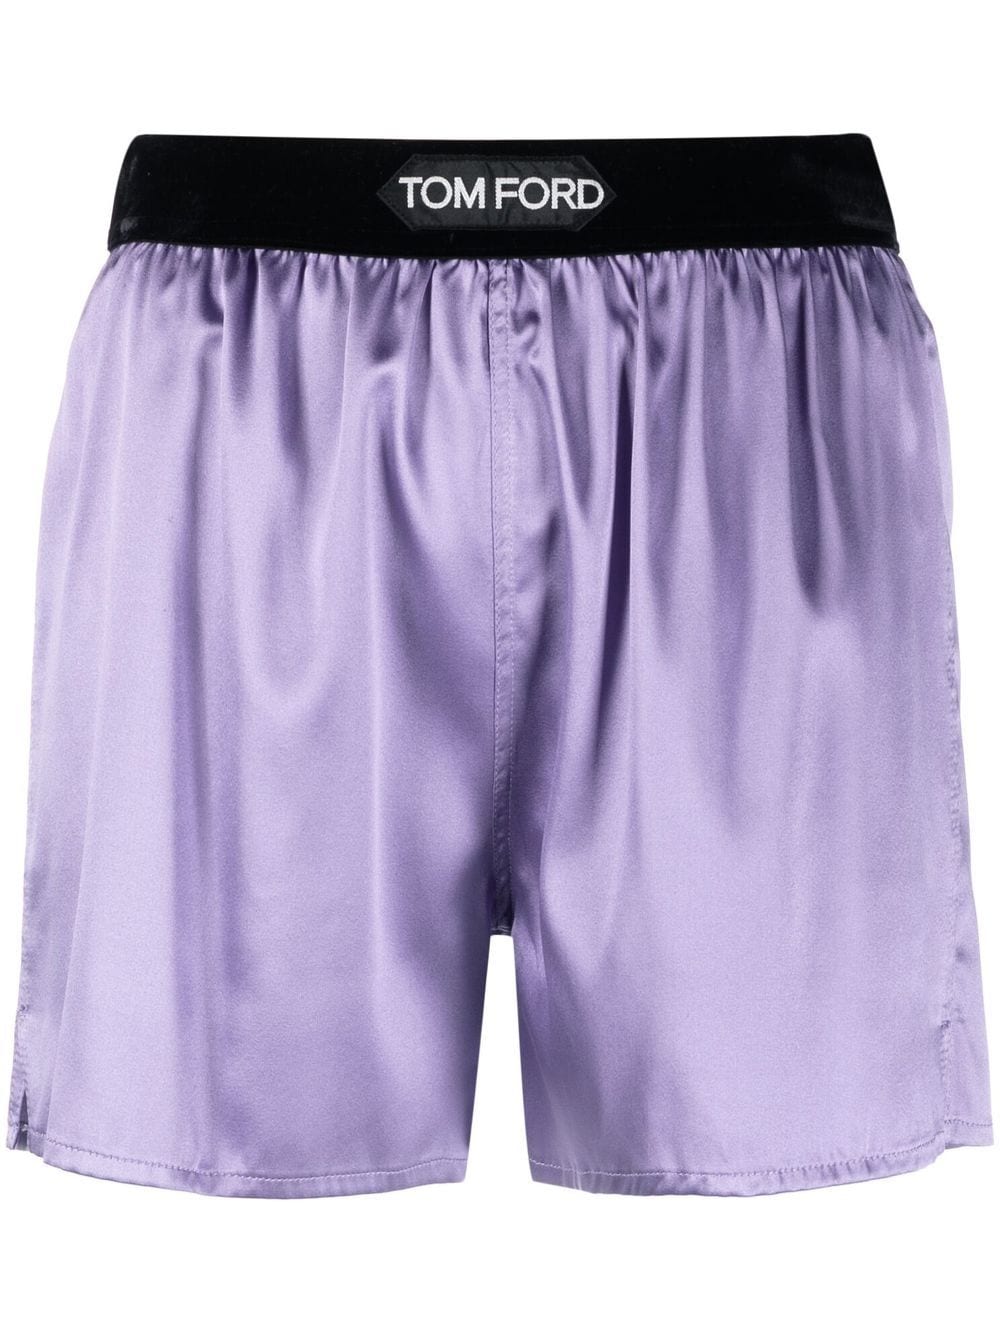 TOM FORD Shorts for Women | ModeSens